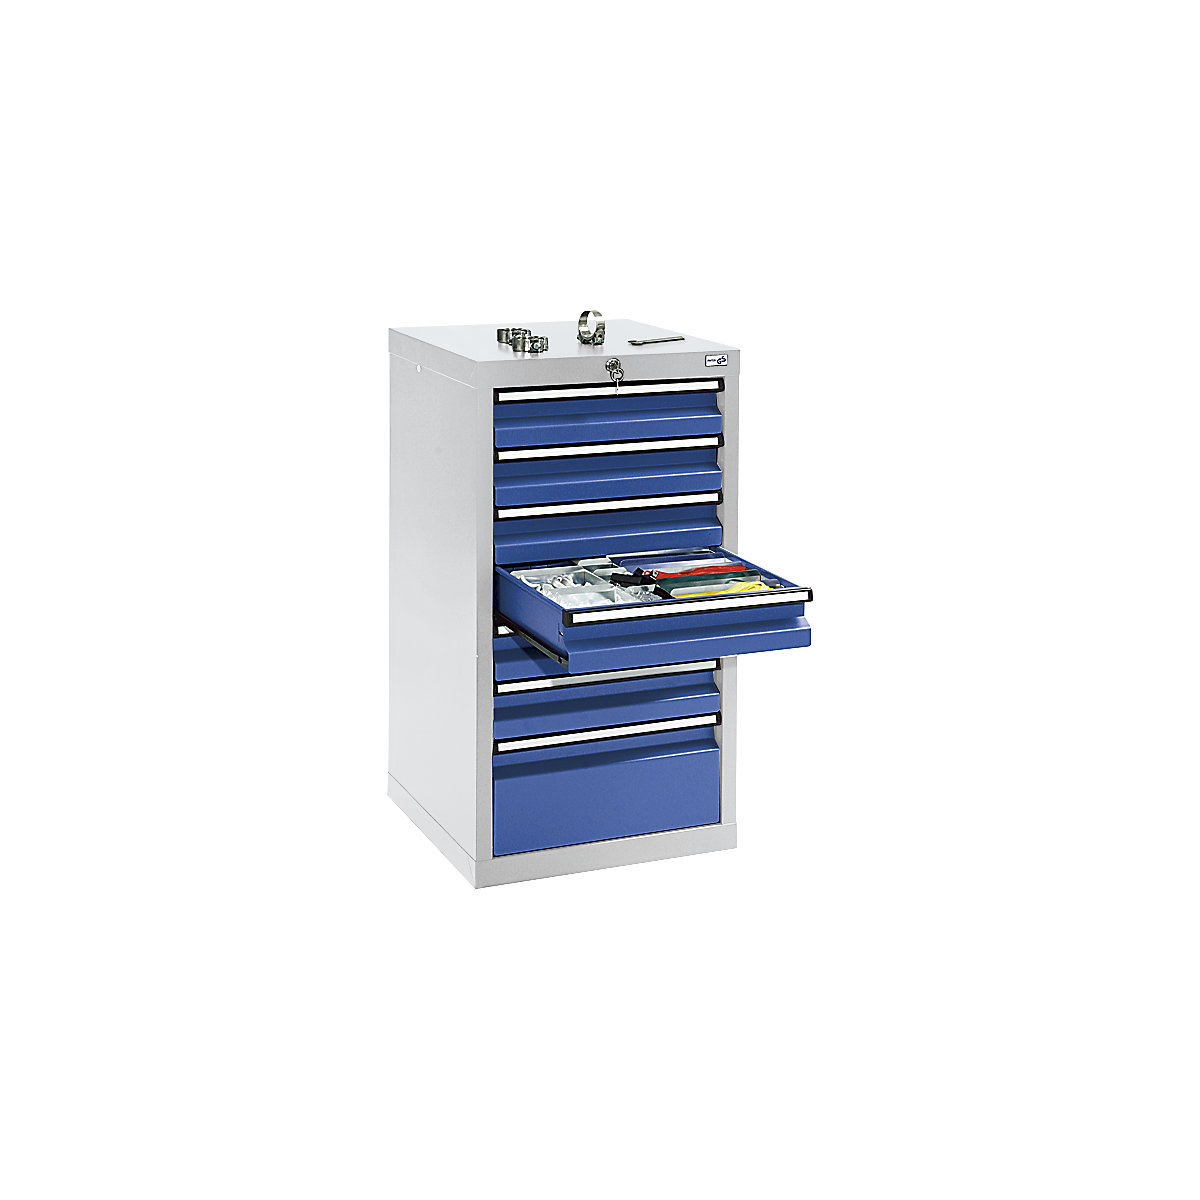 Zásuvková skříň, v x š x h 900 x 500 x 500 mm, 6 zásuvek 100 mm, 1 zásuvka 200 mm vysoká, korpus světle šedý, zásuvky hořcově modré-8